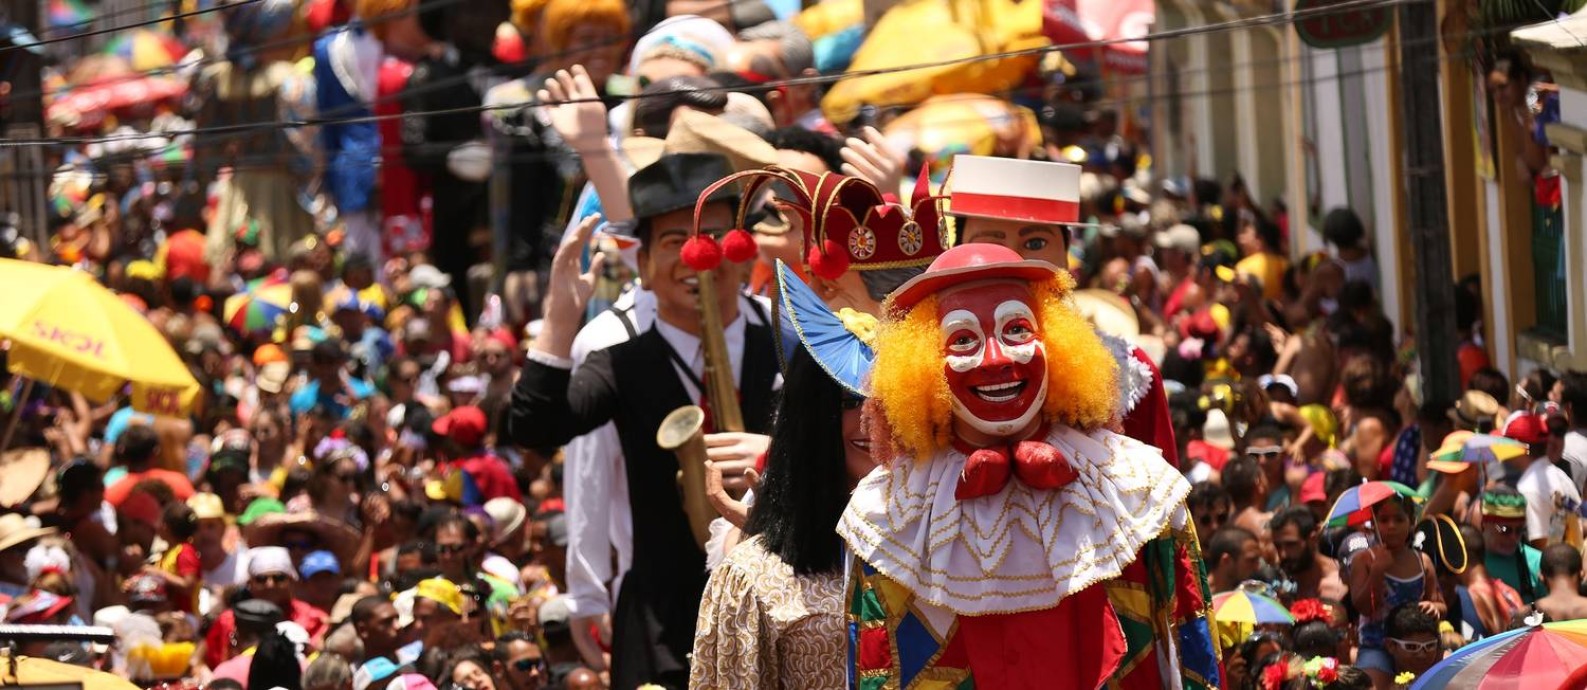 Desfile dos bonecos gigantes de Olinda durante o carnaval pernambucano Foto: Guga Matos / Divulgação